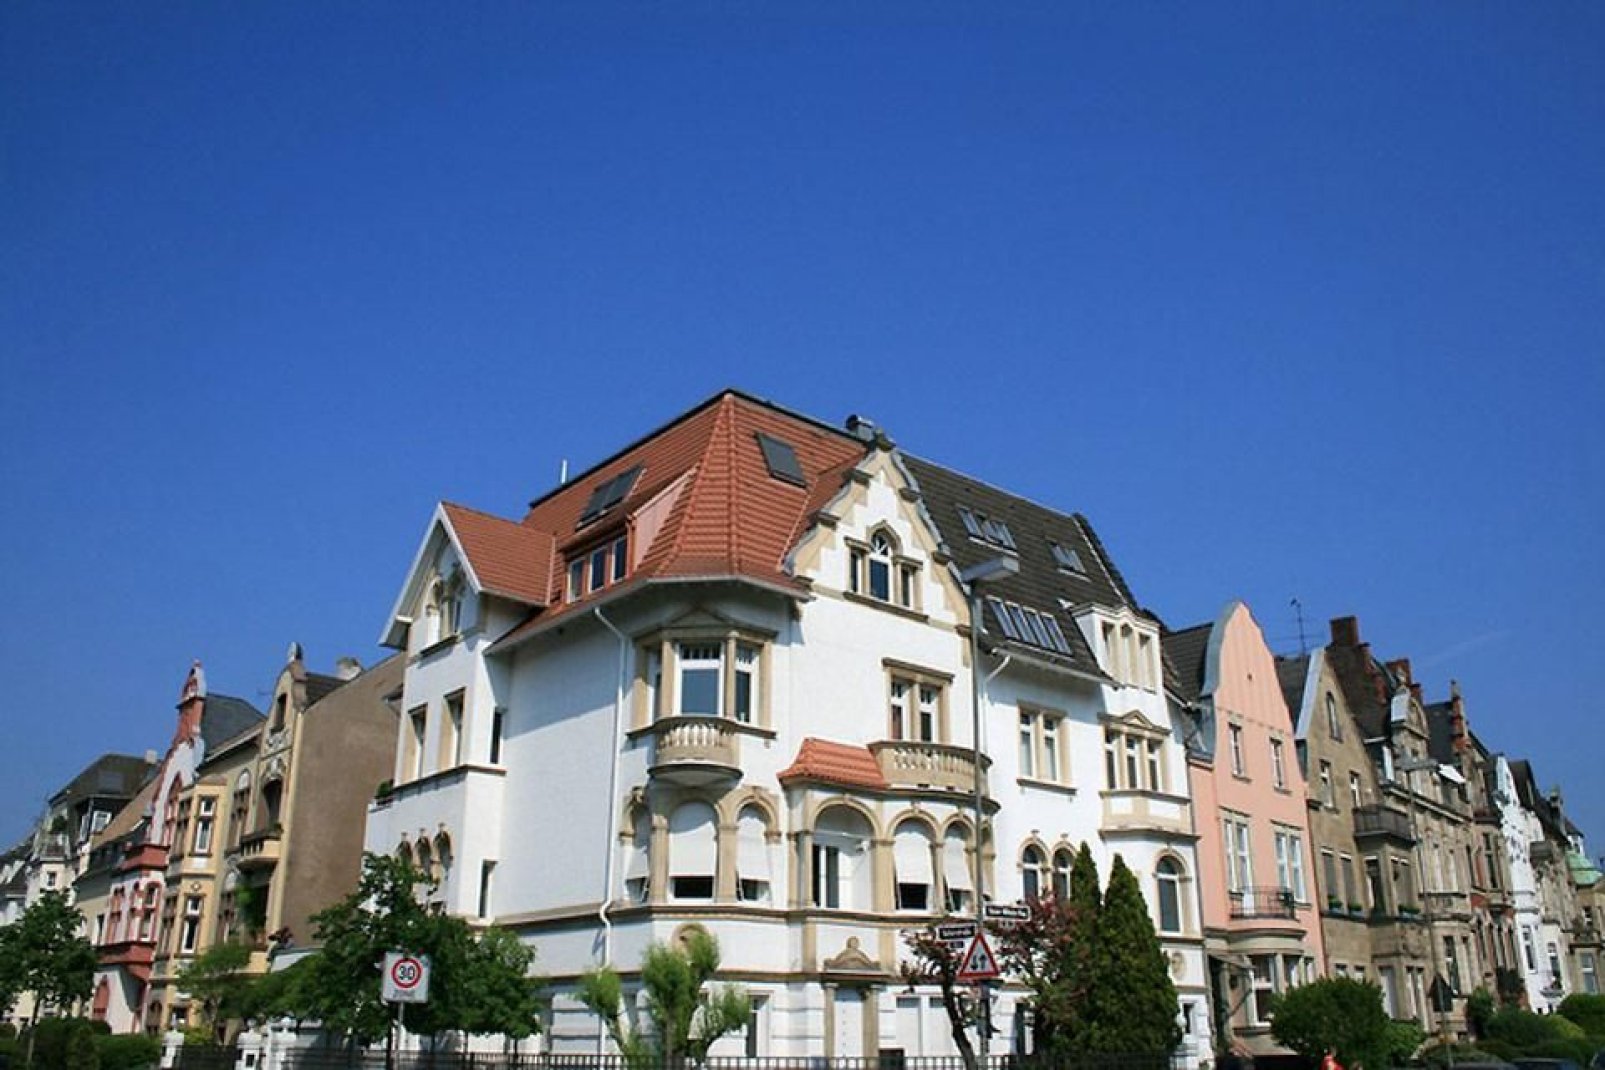 Las casas de Düsseldorf se caracterizan por su arquitectura resplandeciente.